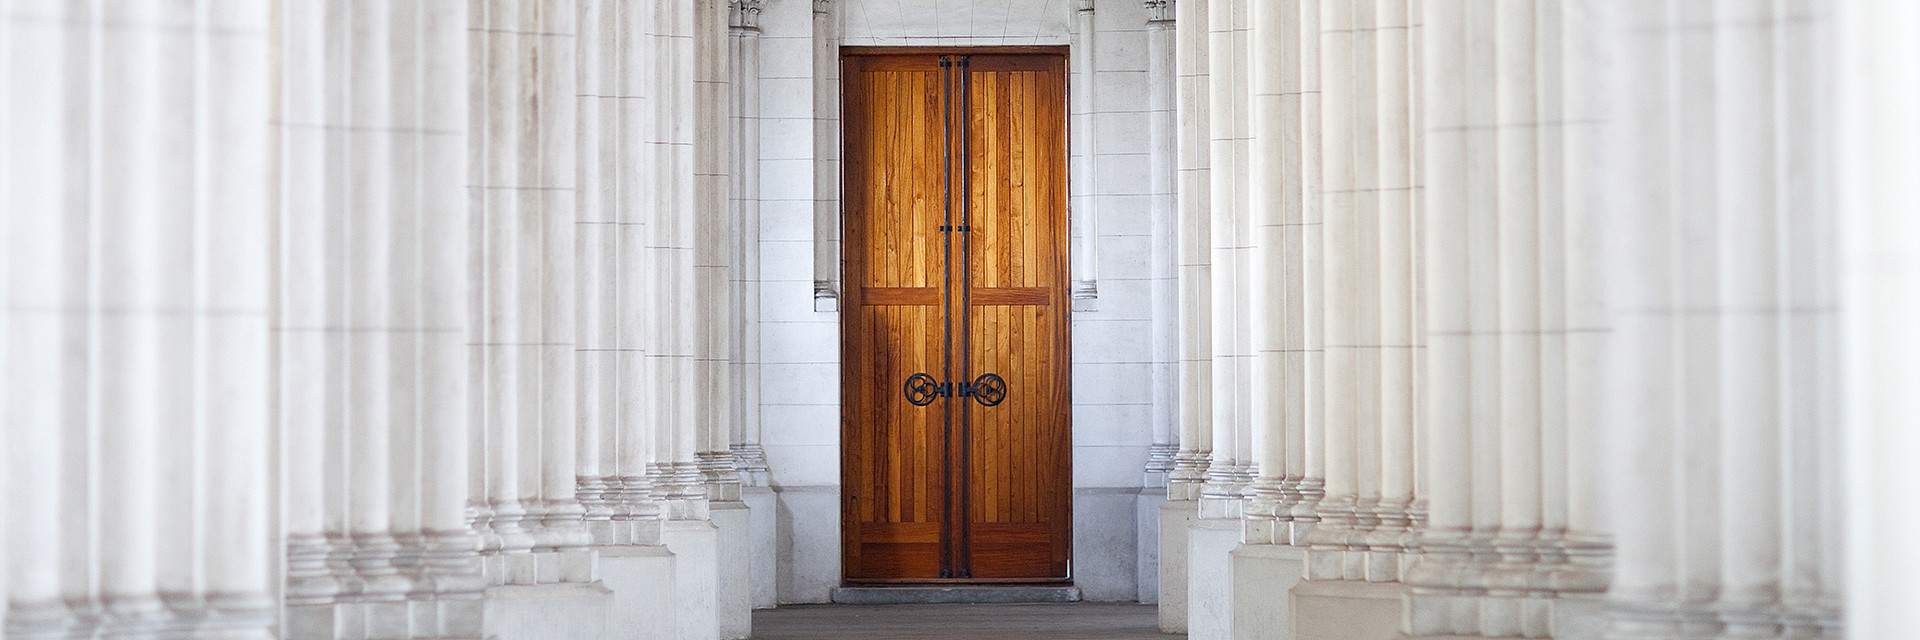 Kirchenaustritt in Österreich - Kircheneingangsbereich mit einer Kirchentür aus Holz